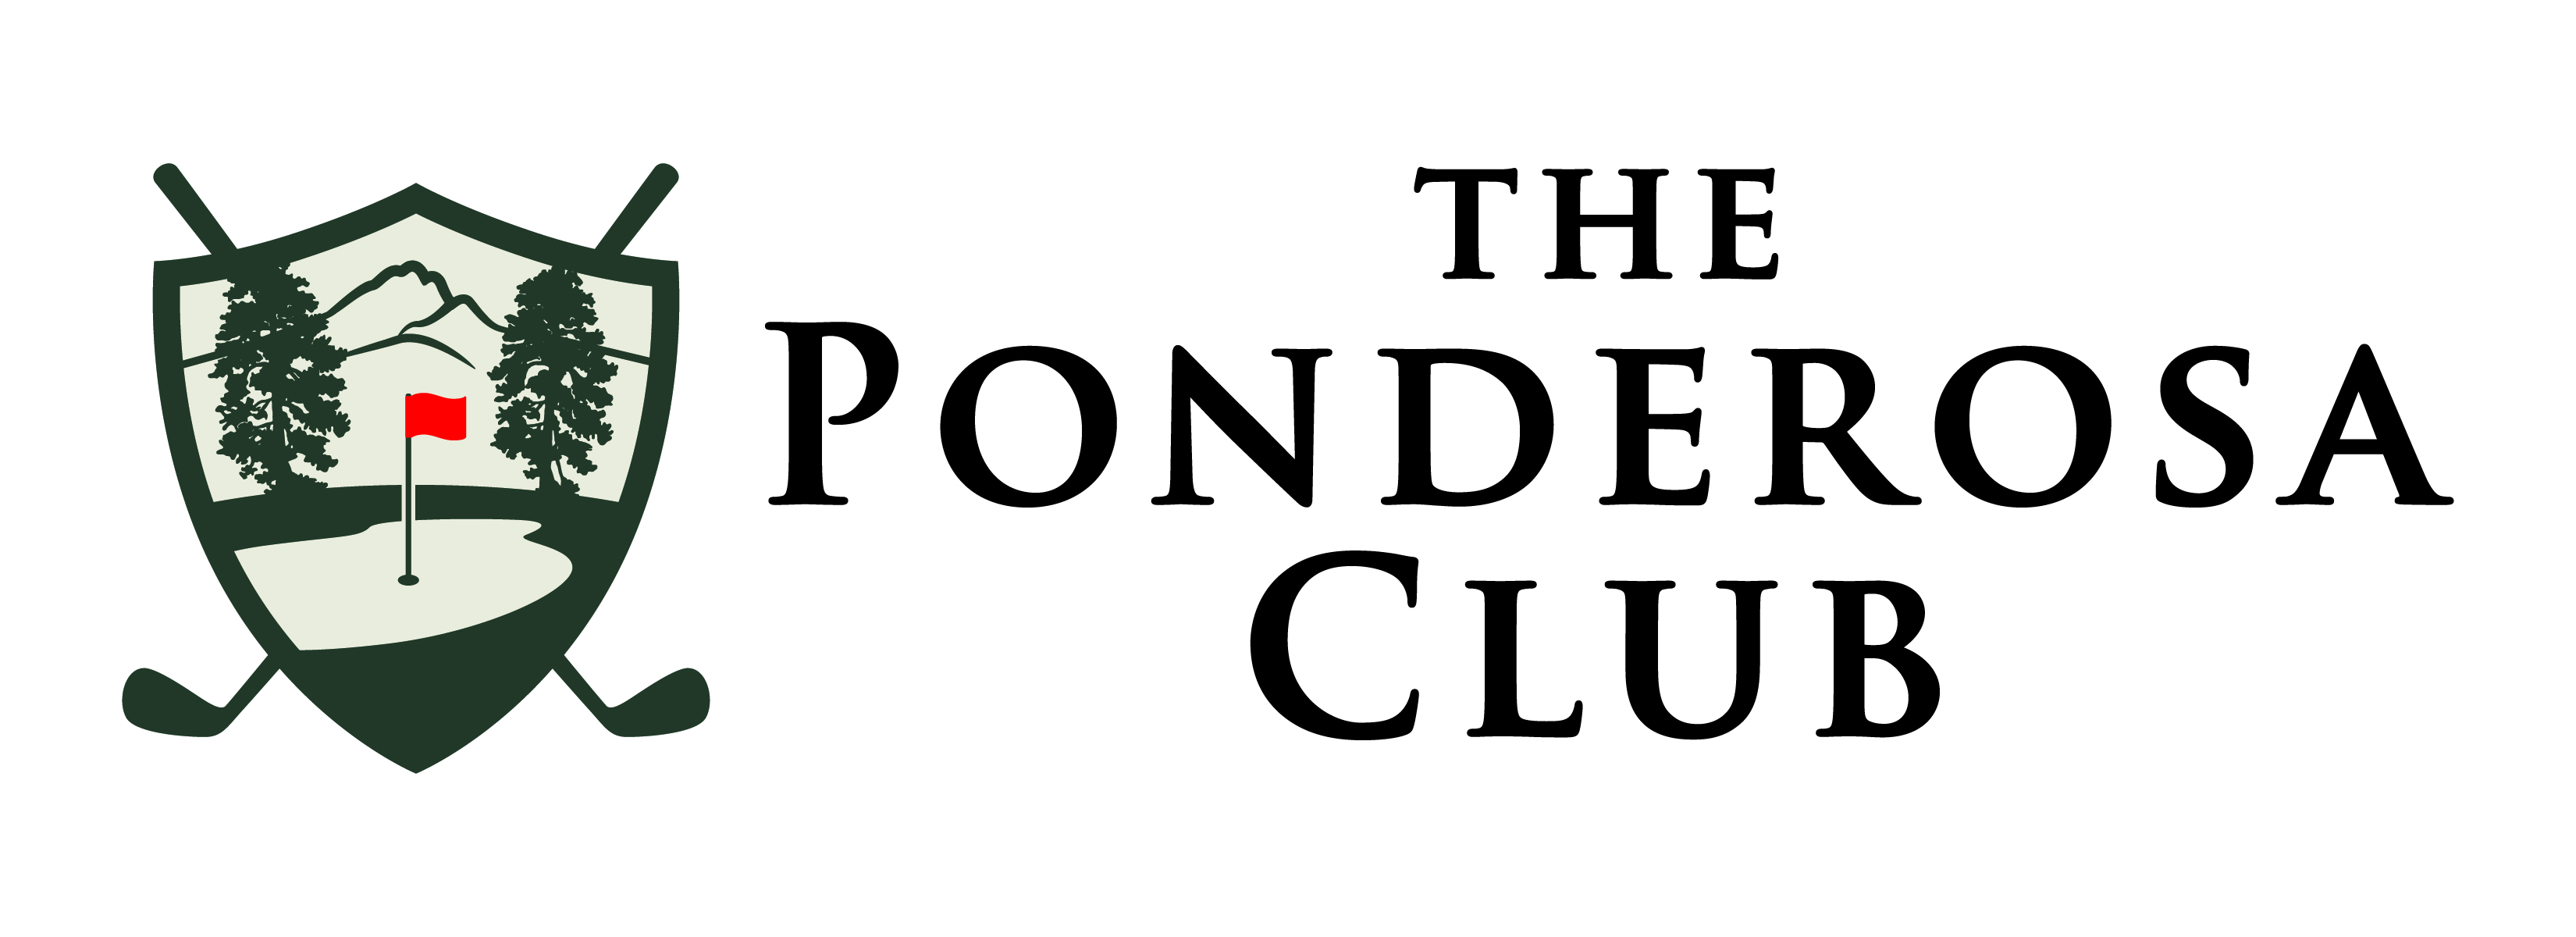 The Ponderosa Club